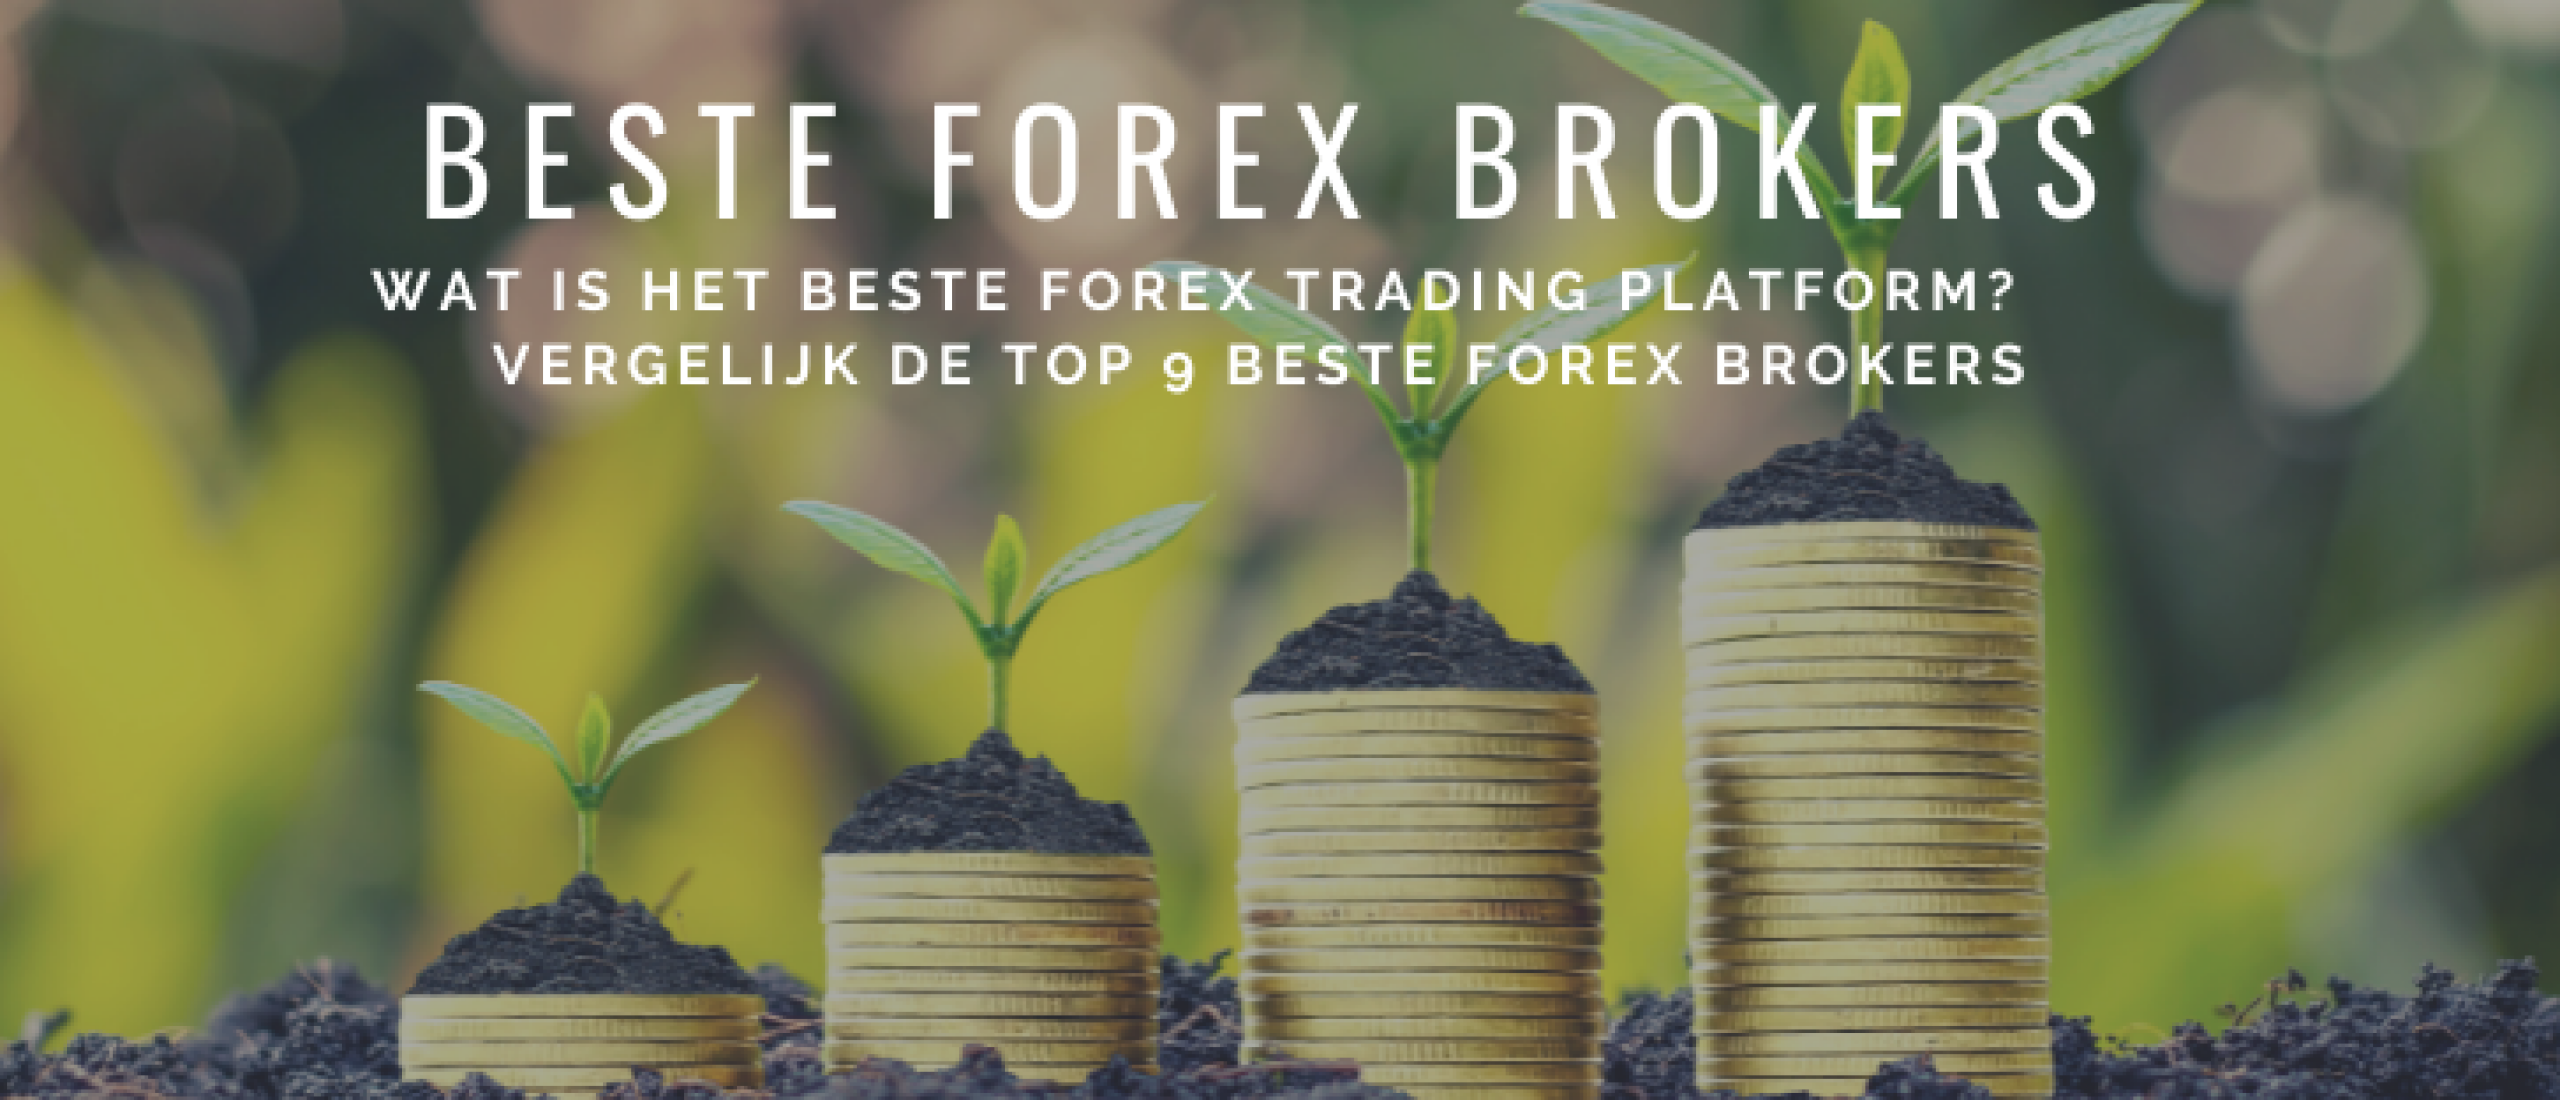 beste-forex-brokers-vergelijken